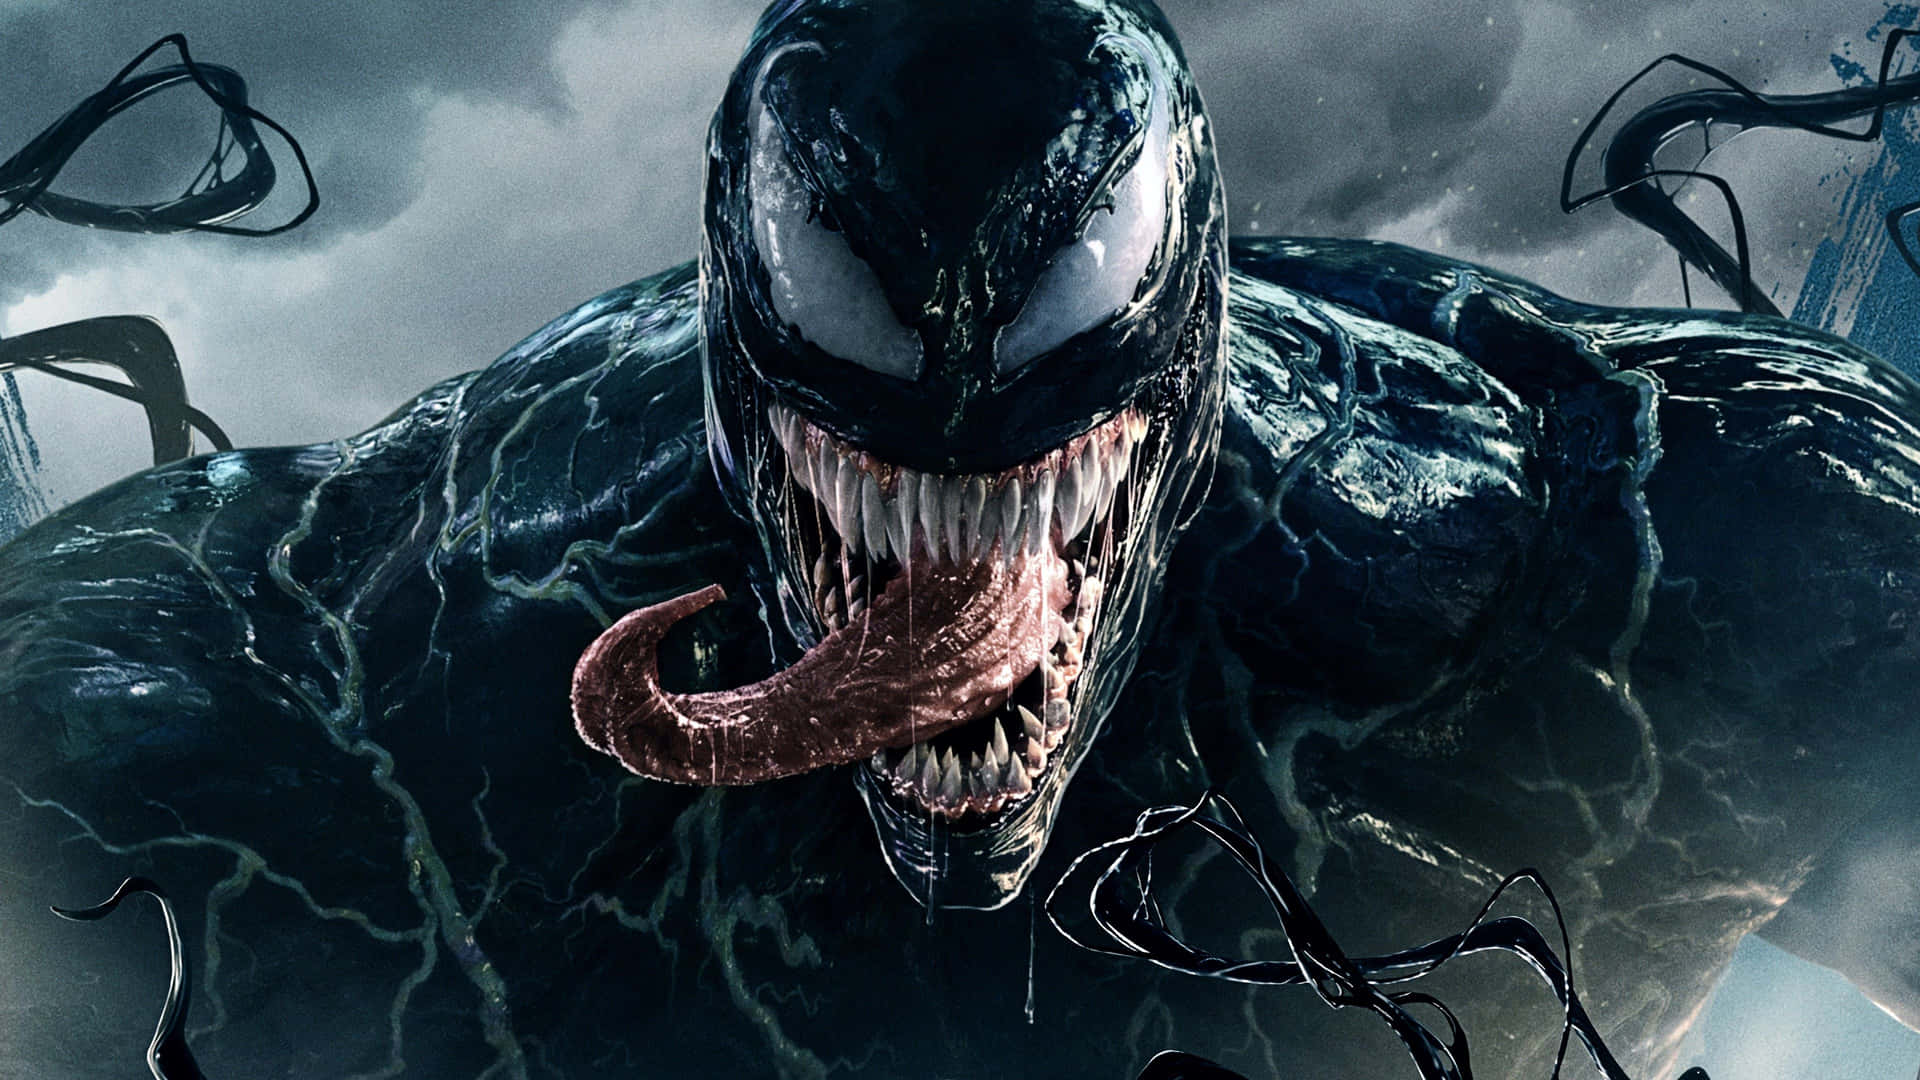 Den ondskabsfulde superskurk Venom truer fra skyggerne.